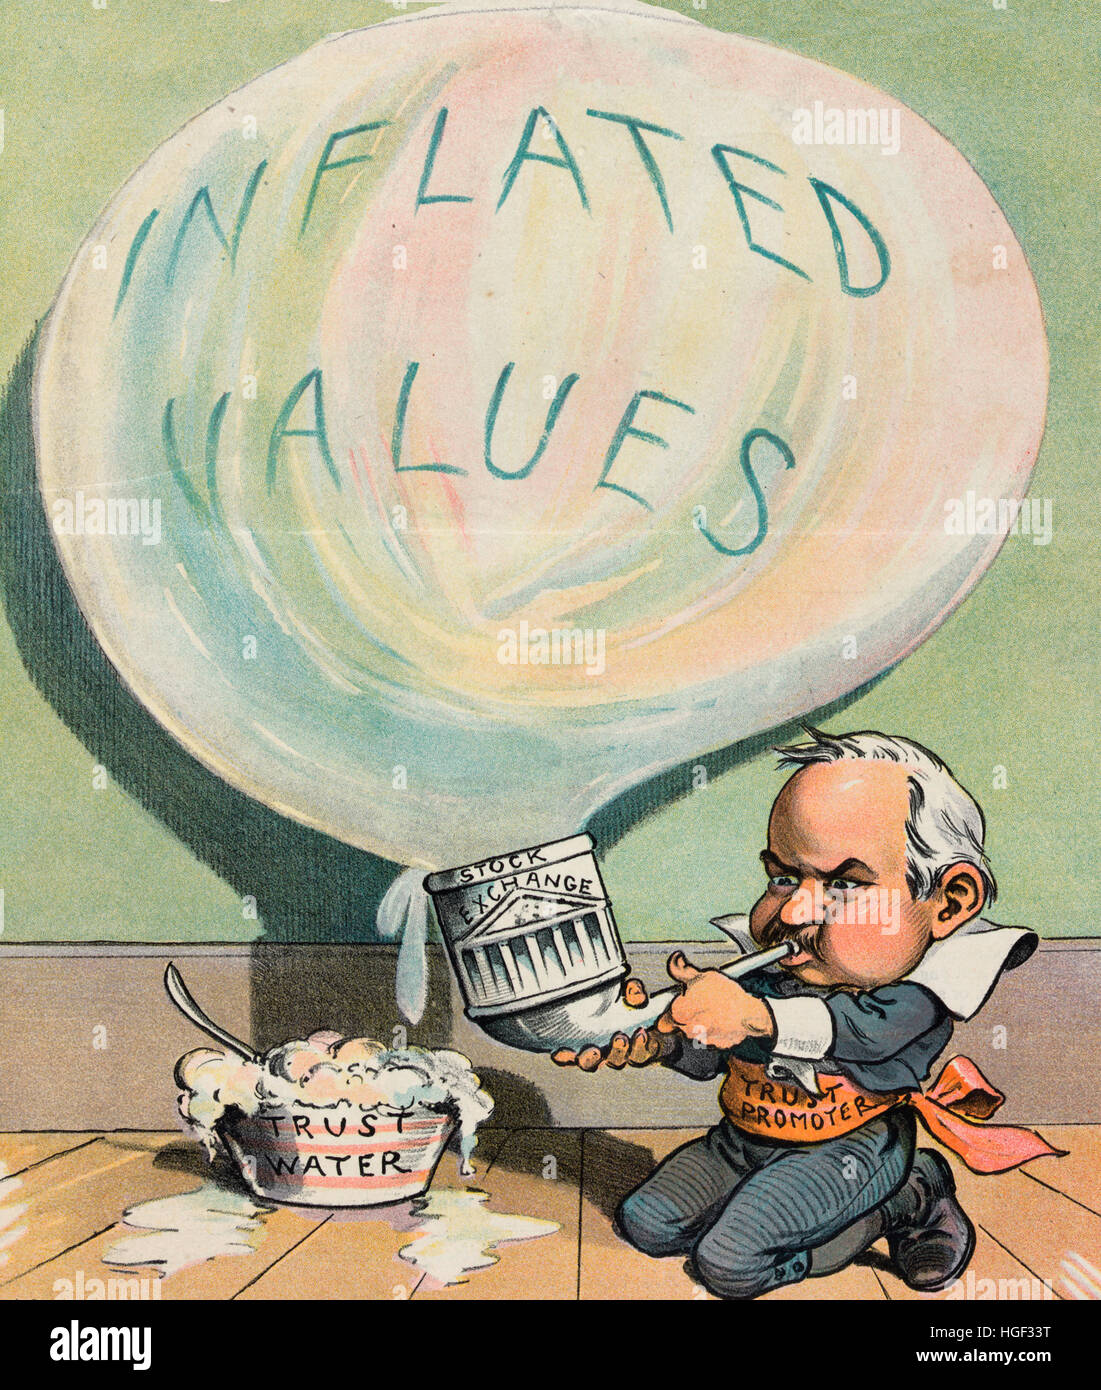 Une bulle dangereuse - Caricature politique montre un homme marqués 'trust' Promoteur une bulle de soufflage gonflés marqués 'Valeurs' avec 'trust' de l'eau et un tube étiqueté "Stock Exchange". 1902 Banque D'Images